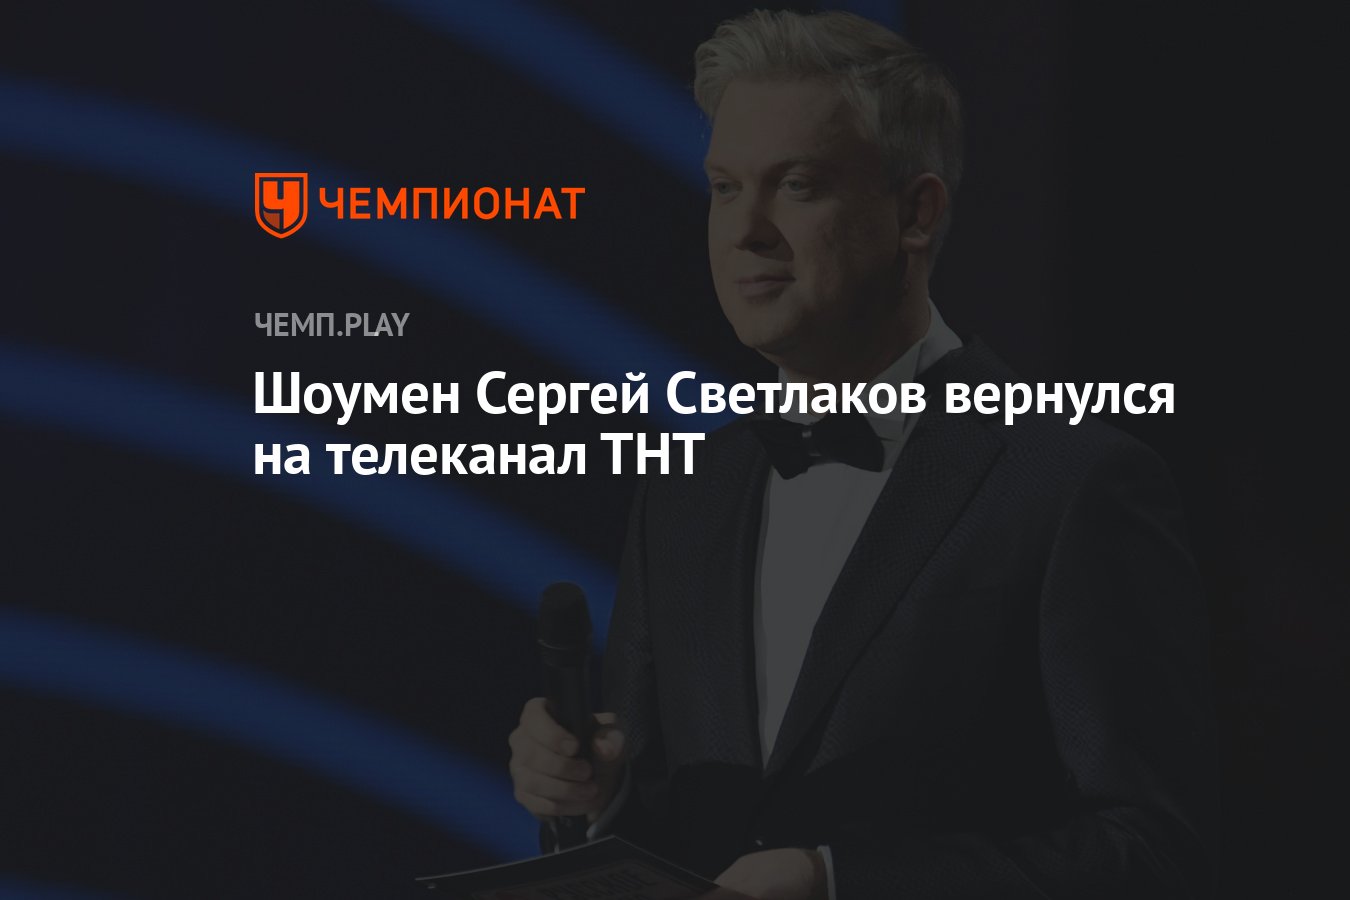 Герои ТНТ Светлаков. Светлаков вернулся на ТНТ.